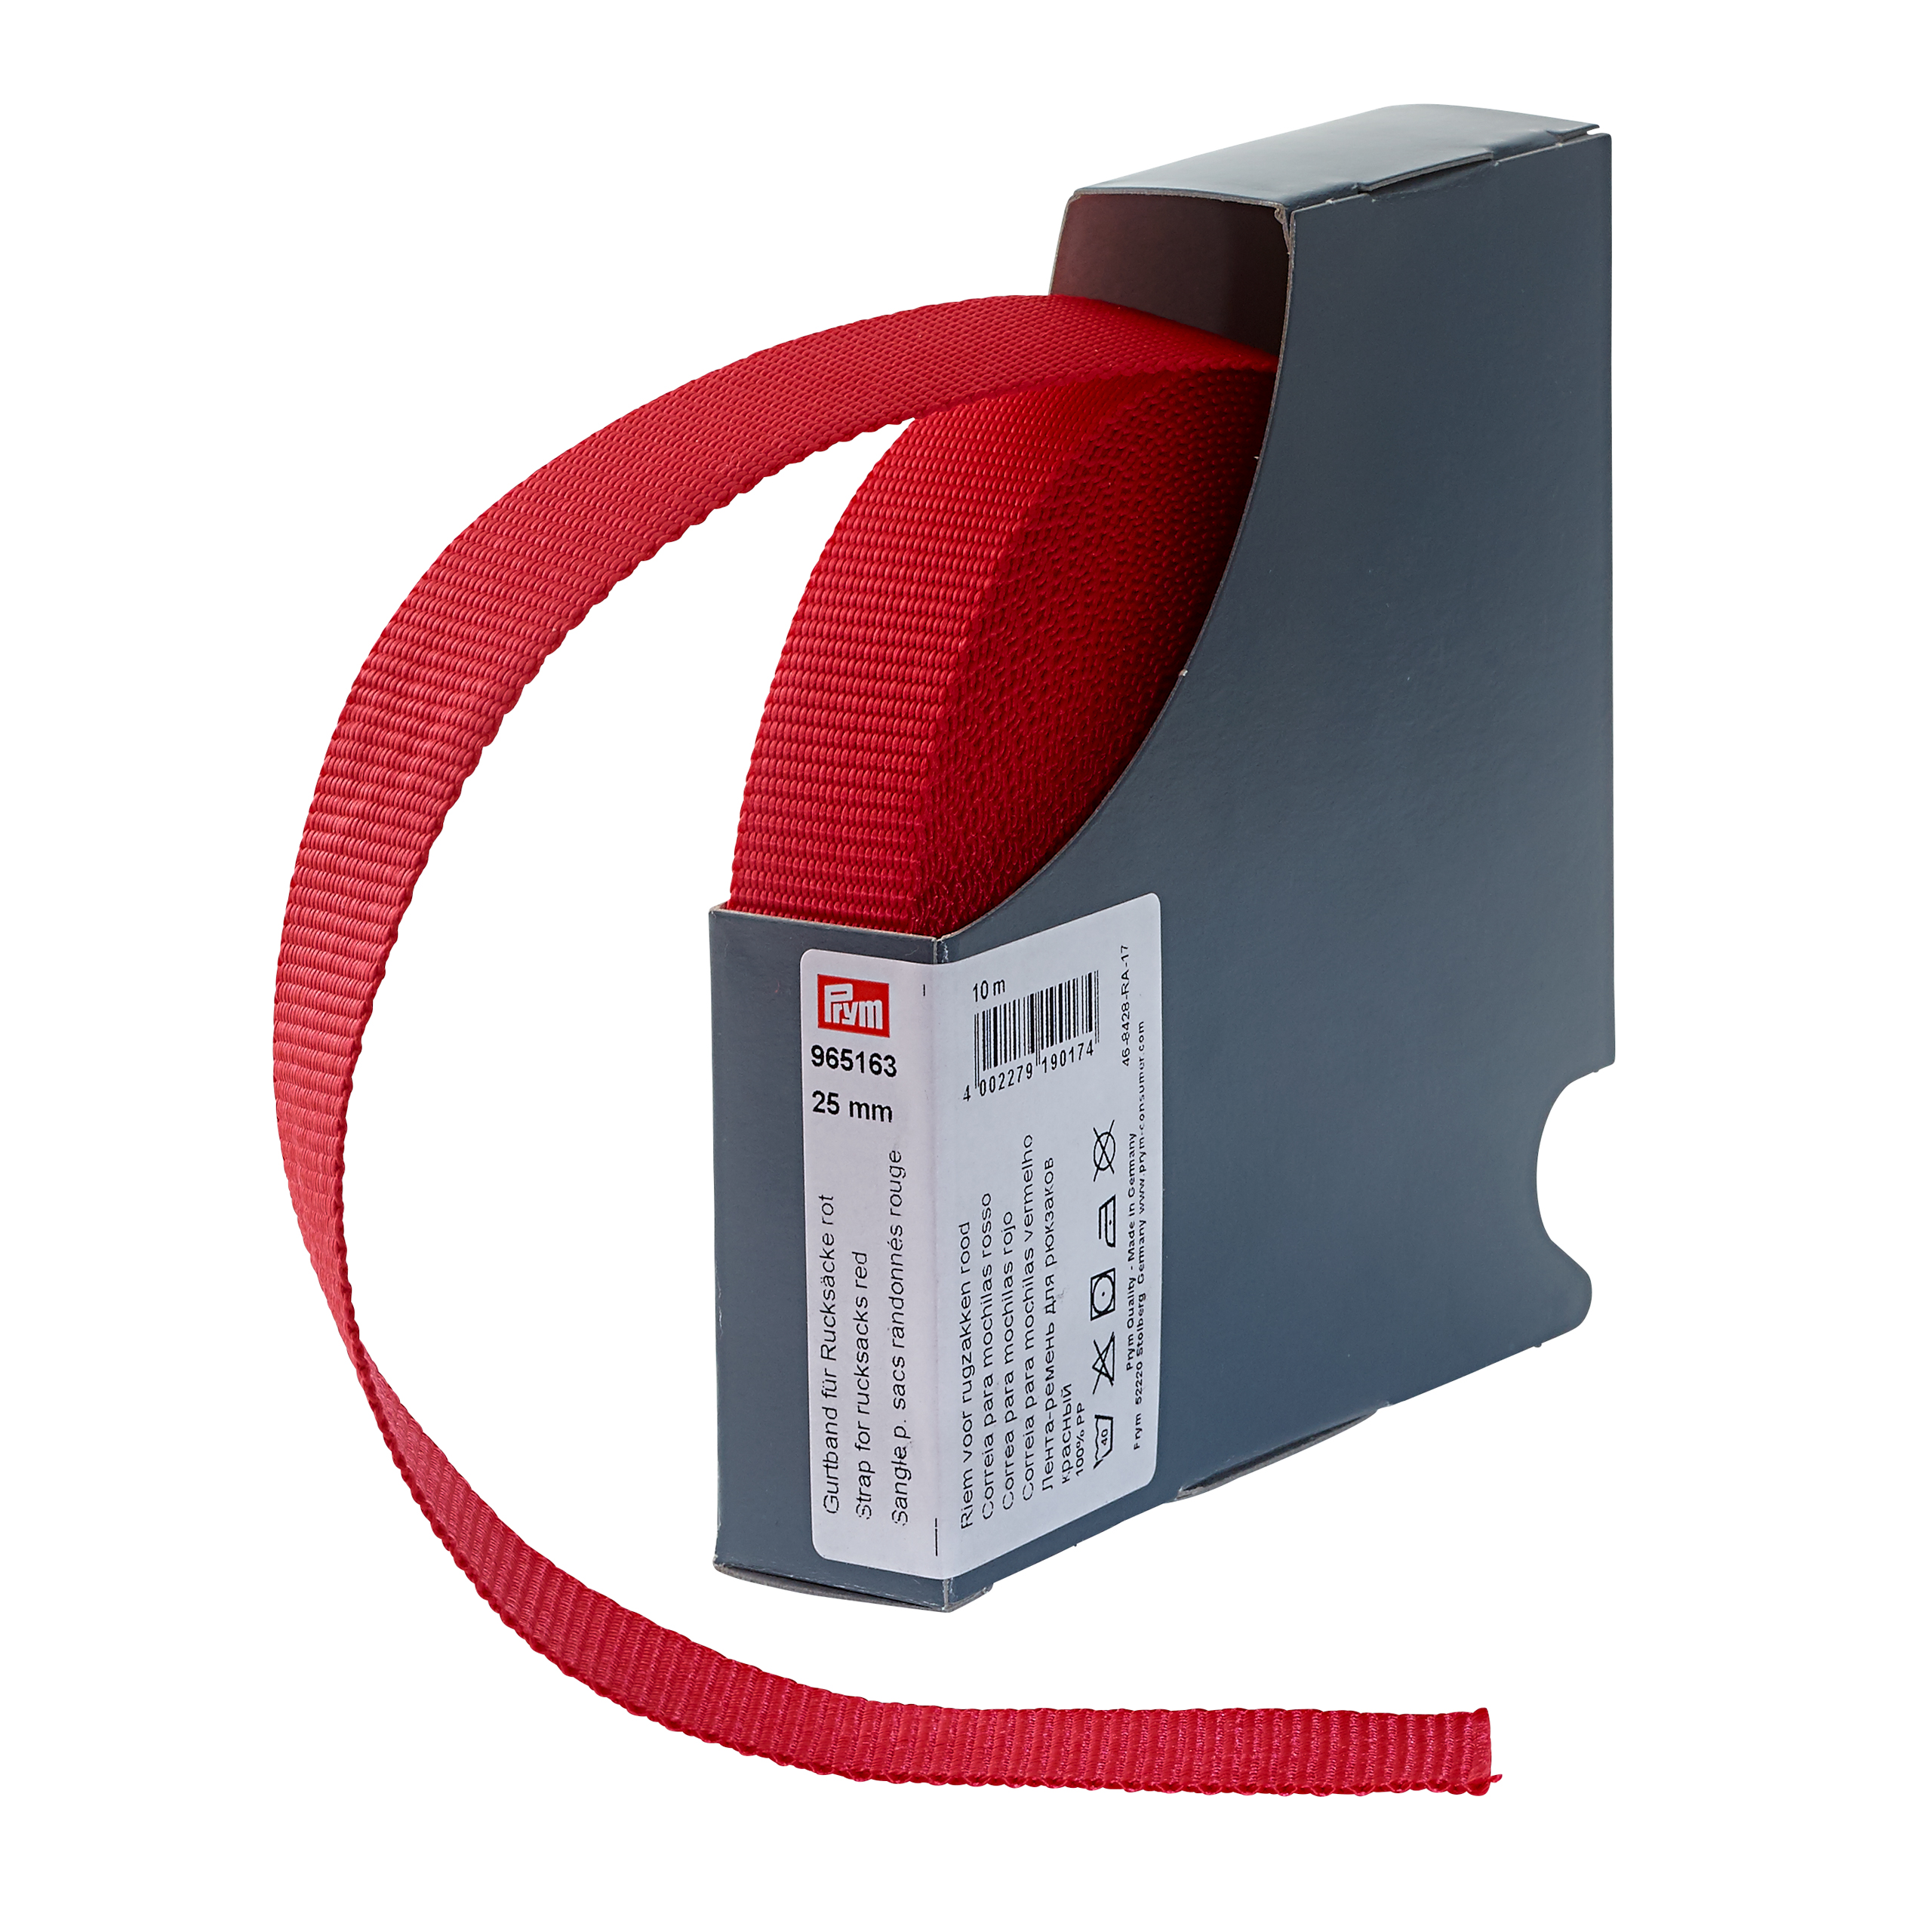 Gurtband für Rucksäcke 25 mm rot, Meterware